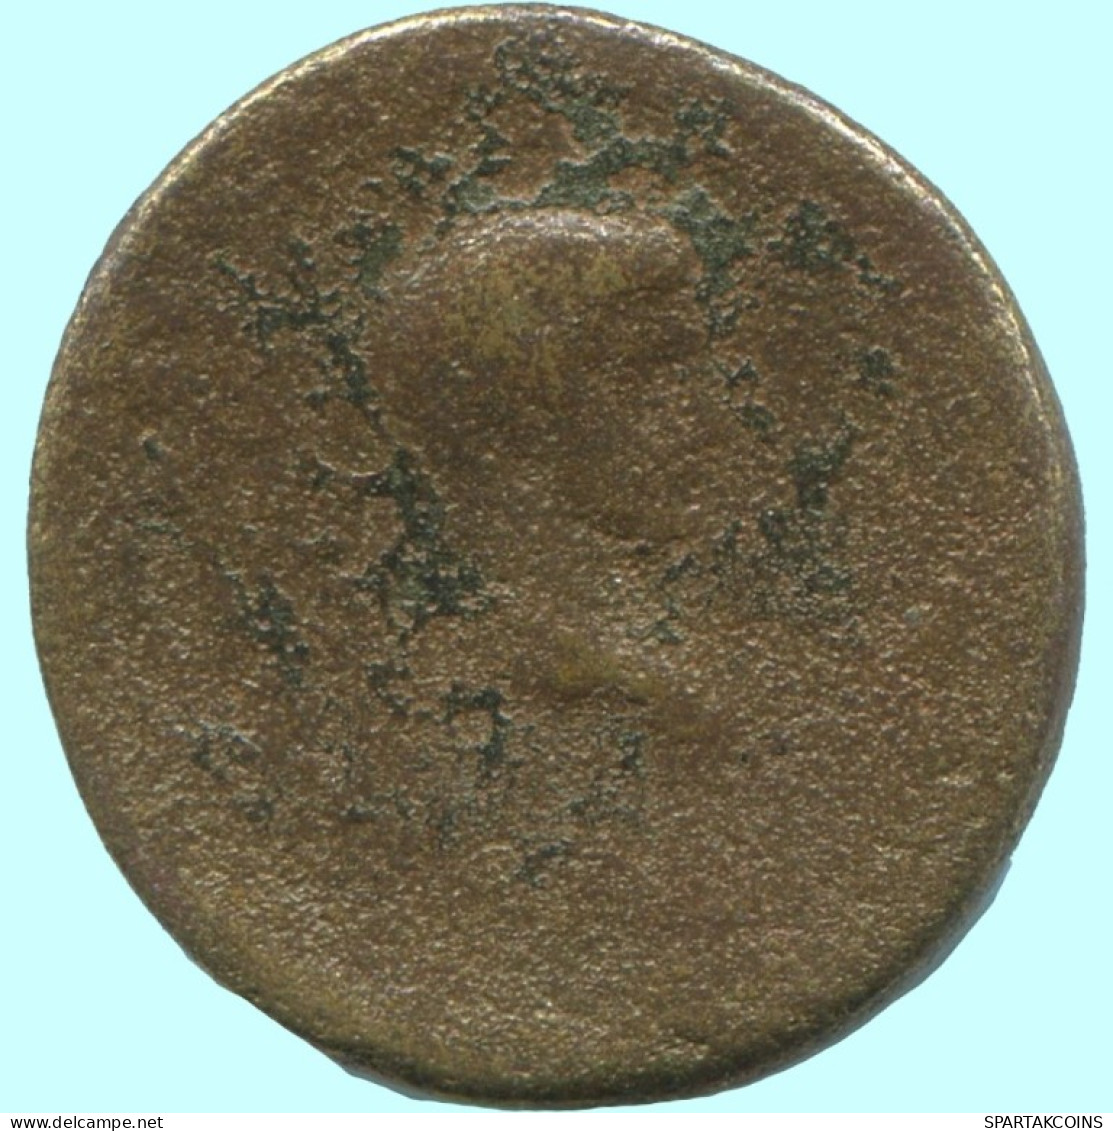 Auténtico ORIGINAL GRIEGO ANTIGUO Moneda 2.4g/17mm #AF943.12.E.A - Griechische Münzen